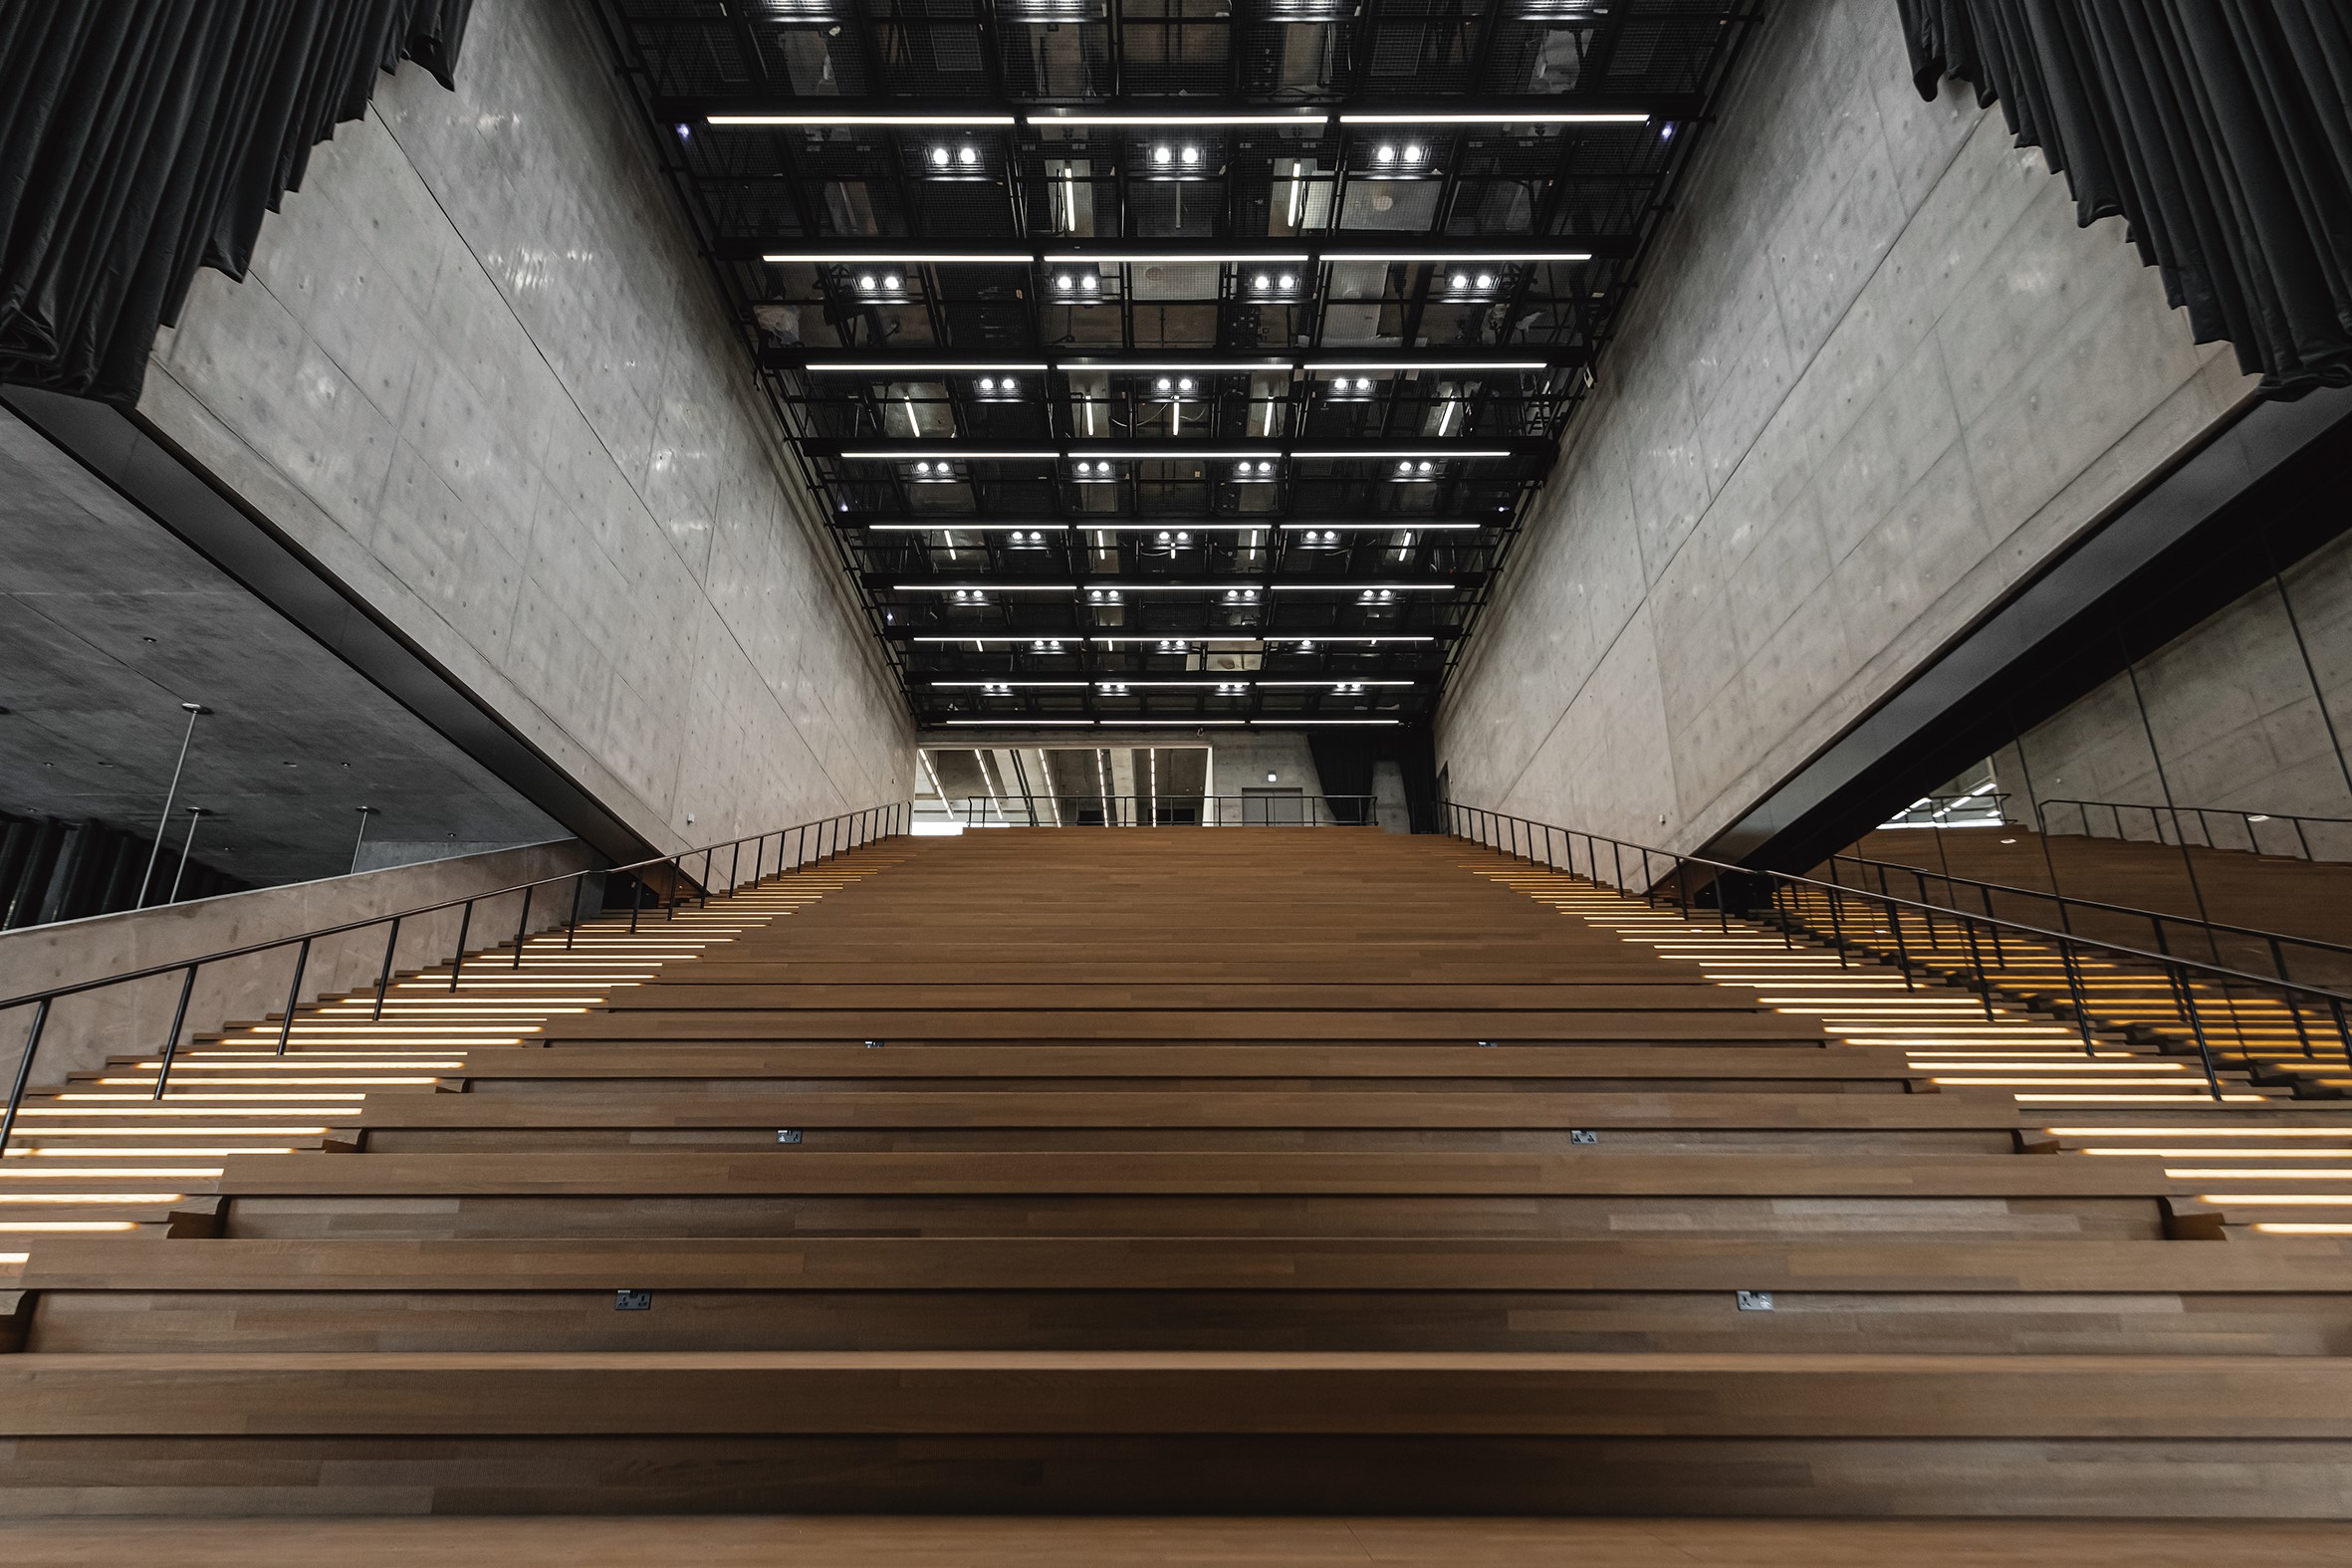 M+ 的大阶梯空间，除了可作为民众自由聚会的空间，也可作为演讲厅和放映厅使用。 ( © Kevin Mak )